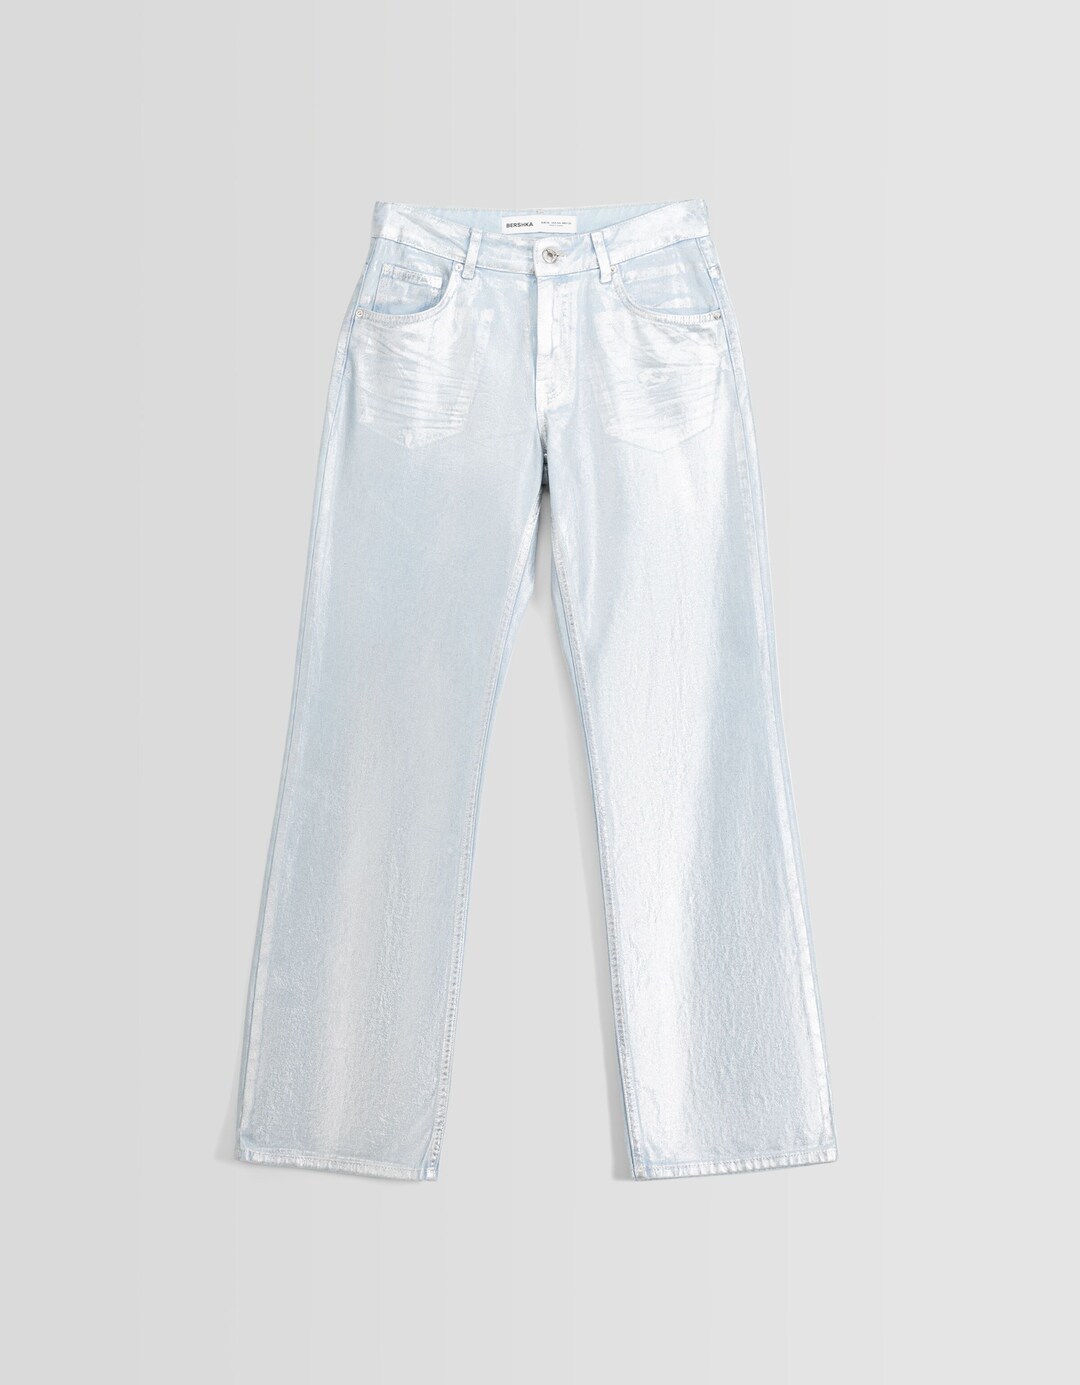 ‘90s metallic jeans